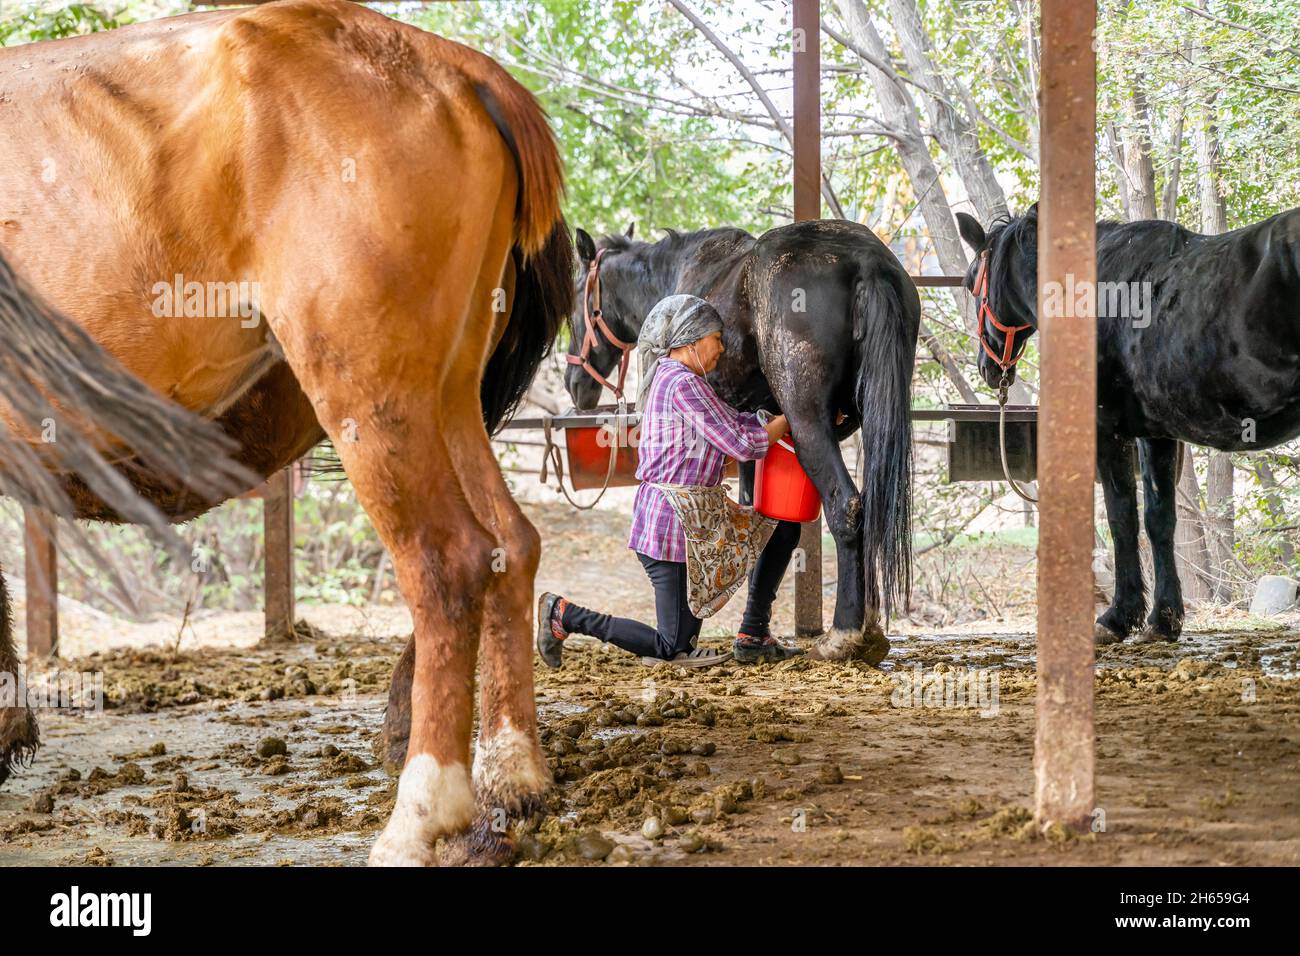 Une femme, laiteuse, qui traite une jument, un cheval, écurant le lait dans un seau dans la ferme extérieure, près d'Almaty, Kazakhstan, Asie centrale Banque D'Images